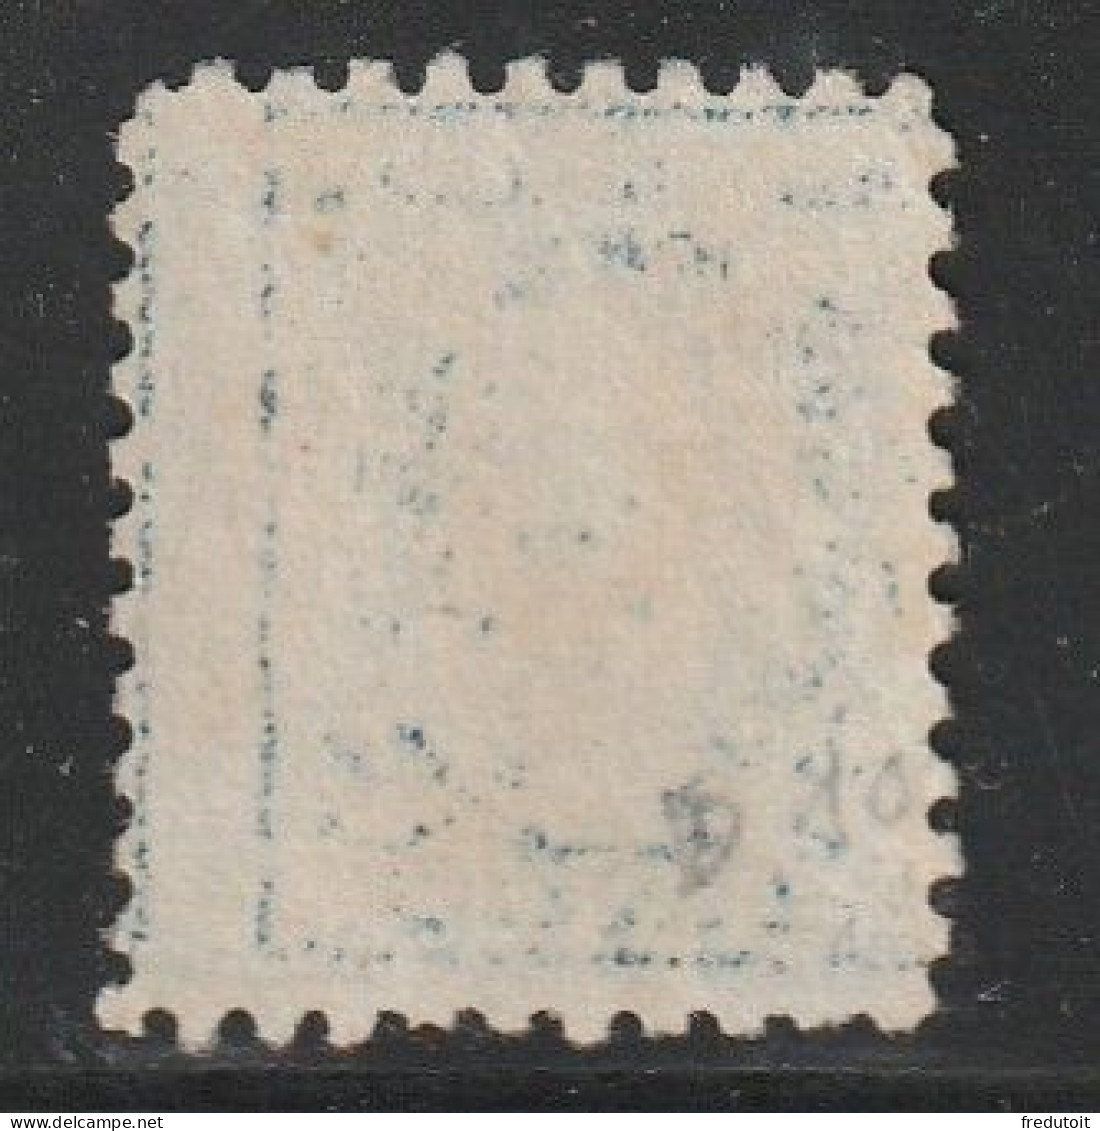 Etats-Unis D'Amérique - N°203 * (1916-19) G.Washington : 5c Bleu (dentelé 10) Sans Filigrane - Oblitérés